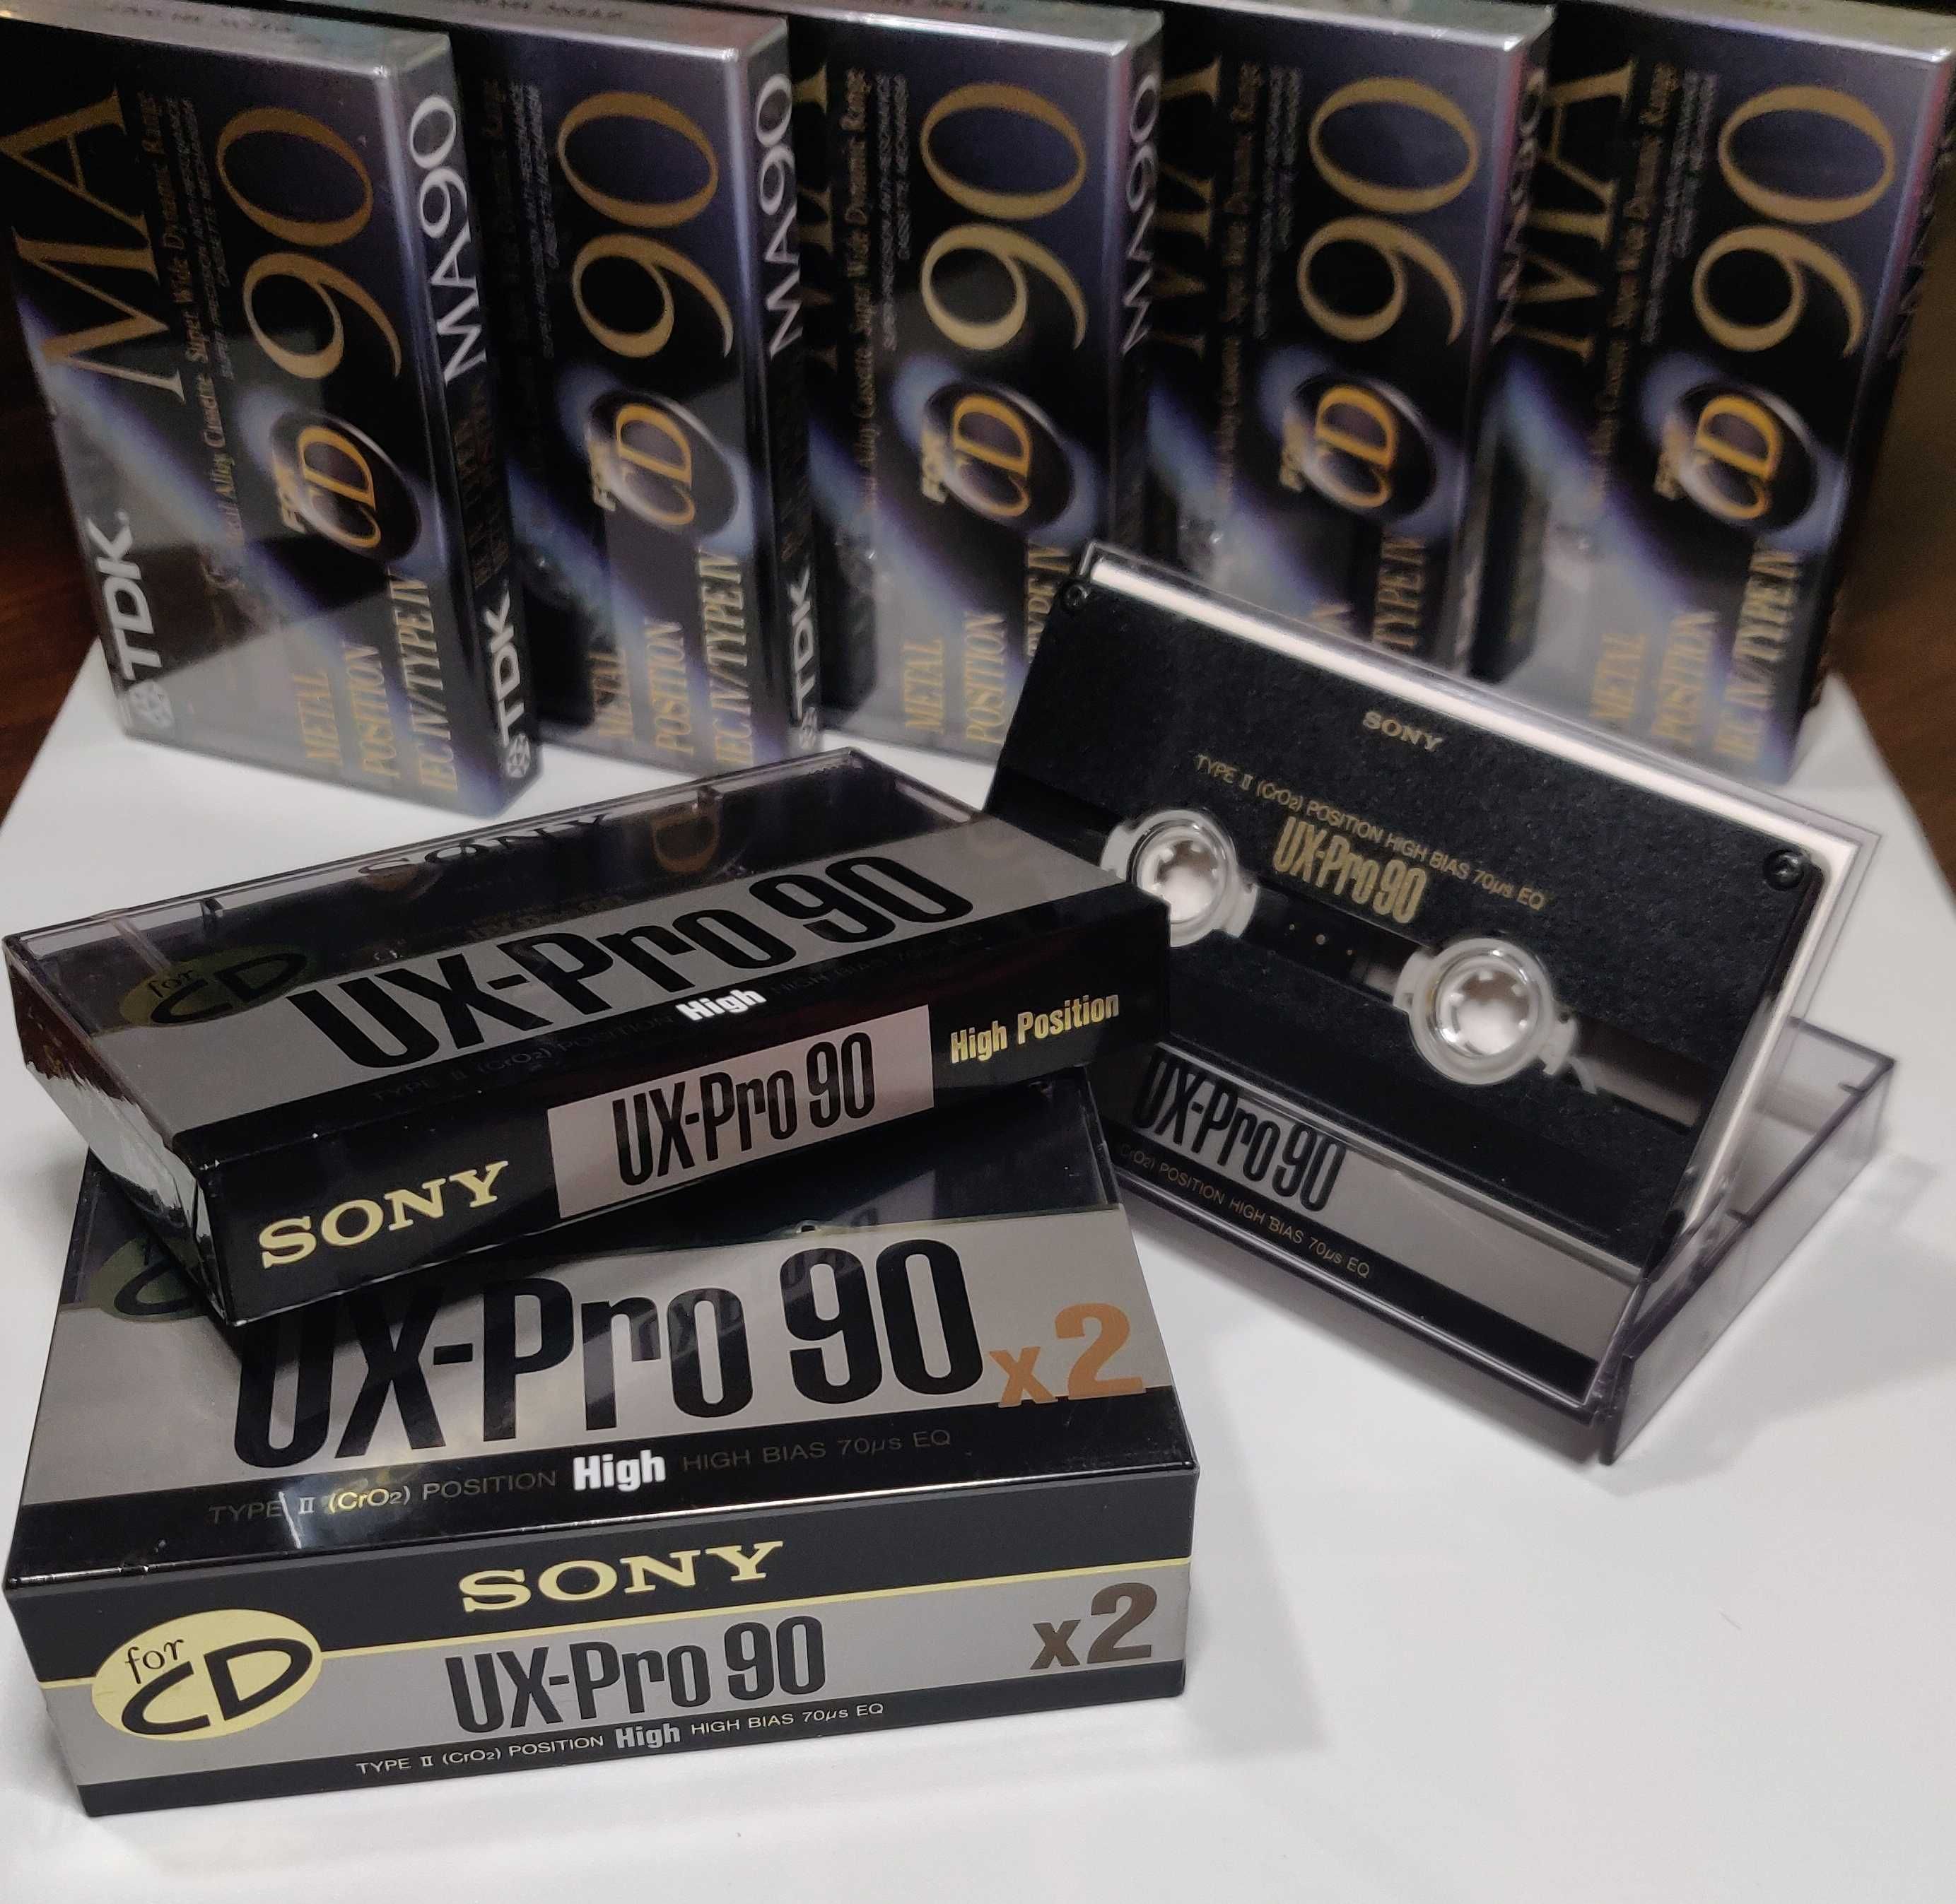 SONY UX-Pro 90 [1989 JAP] _новая аудио кассета в запечатанной упаковке